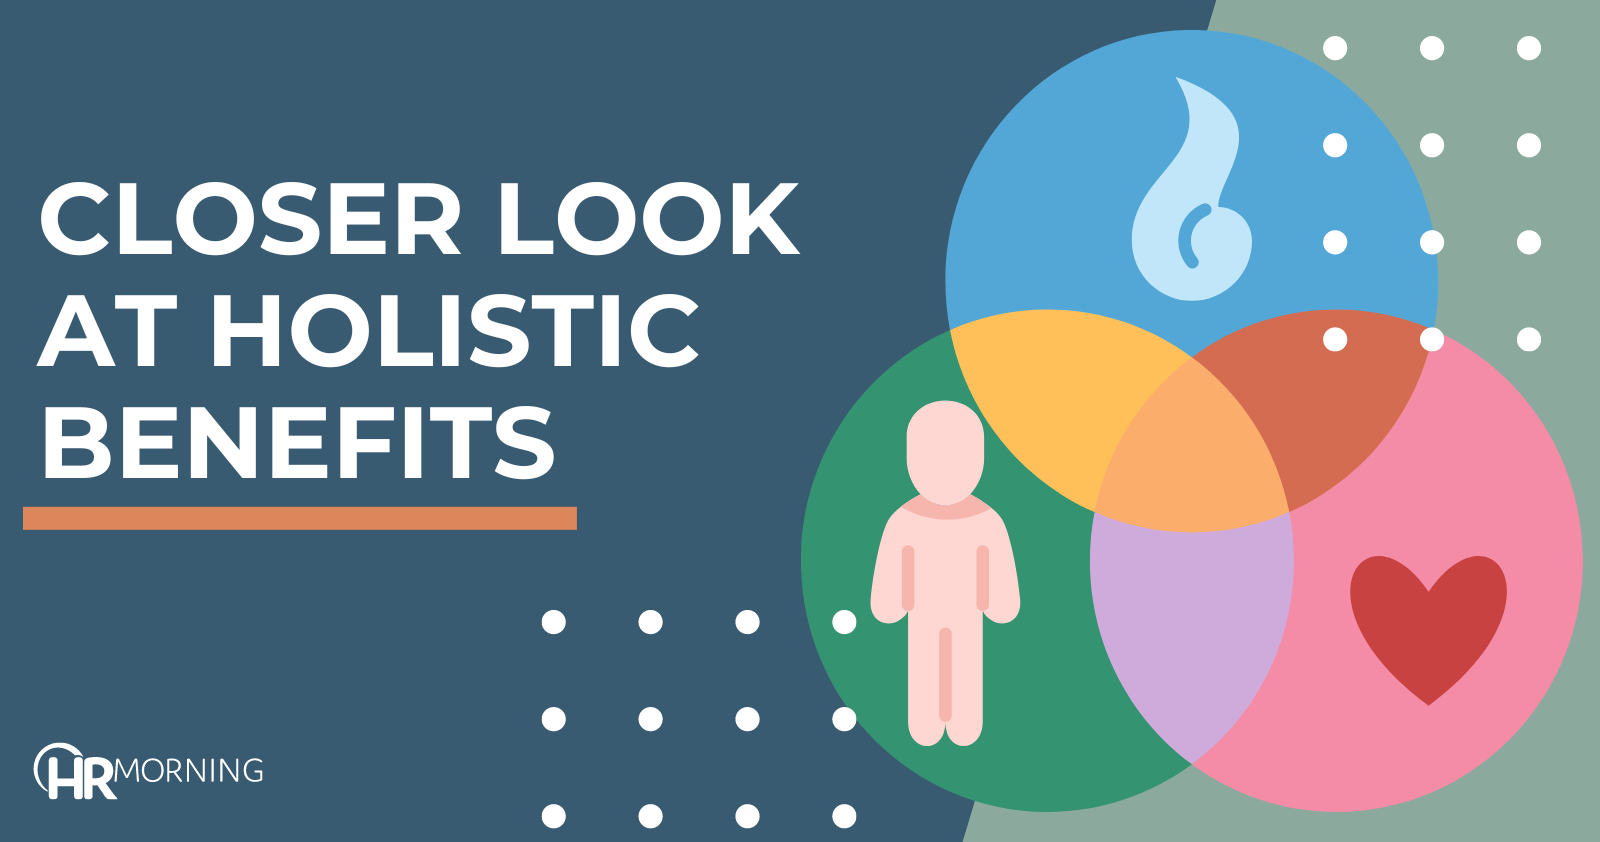 Closer look at holistic benefits